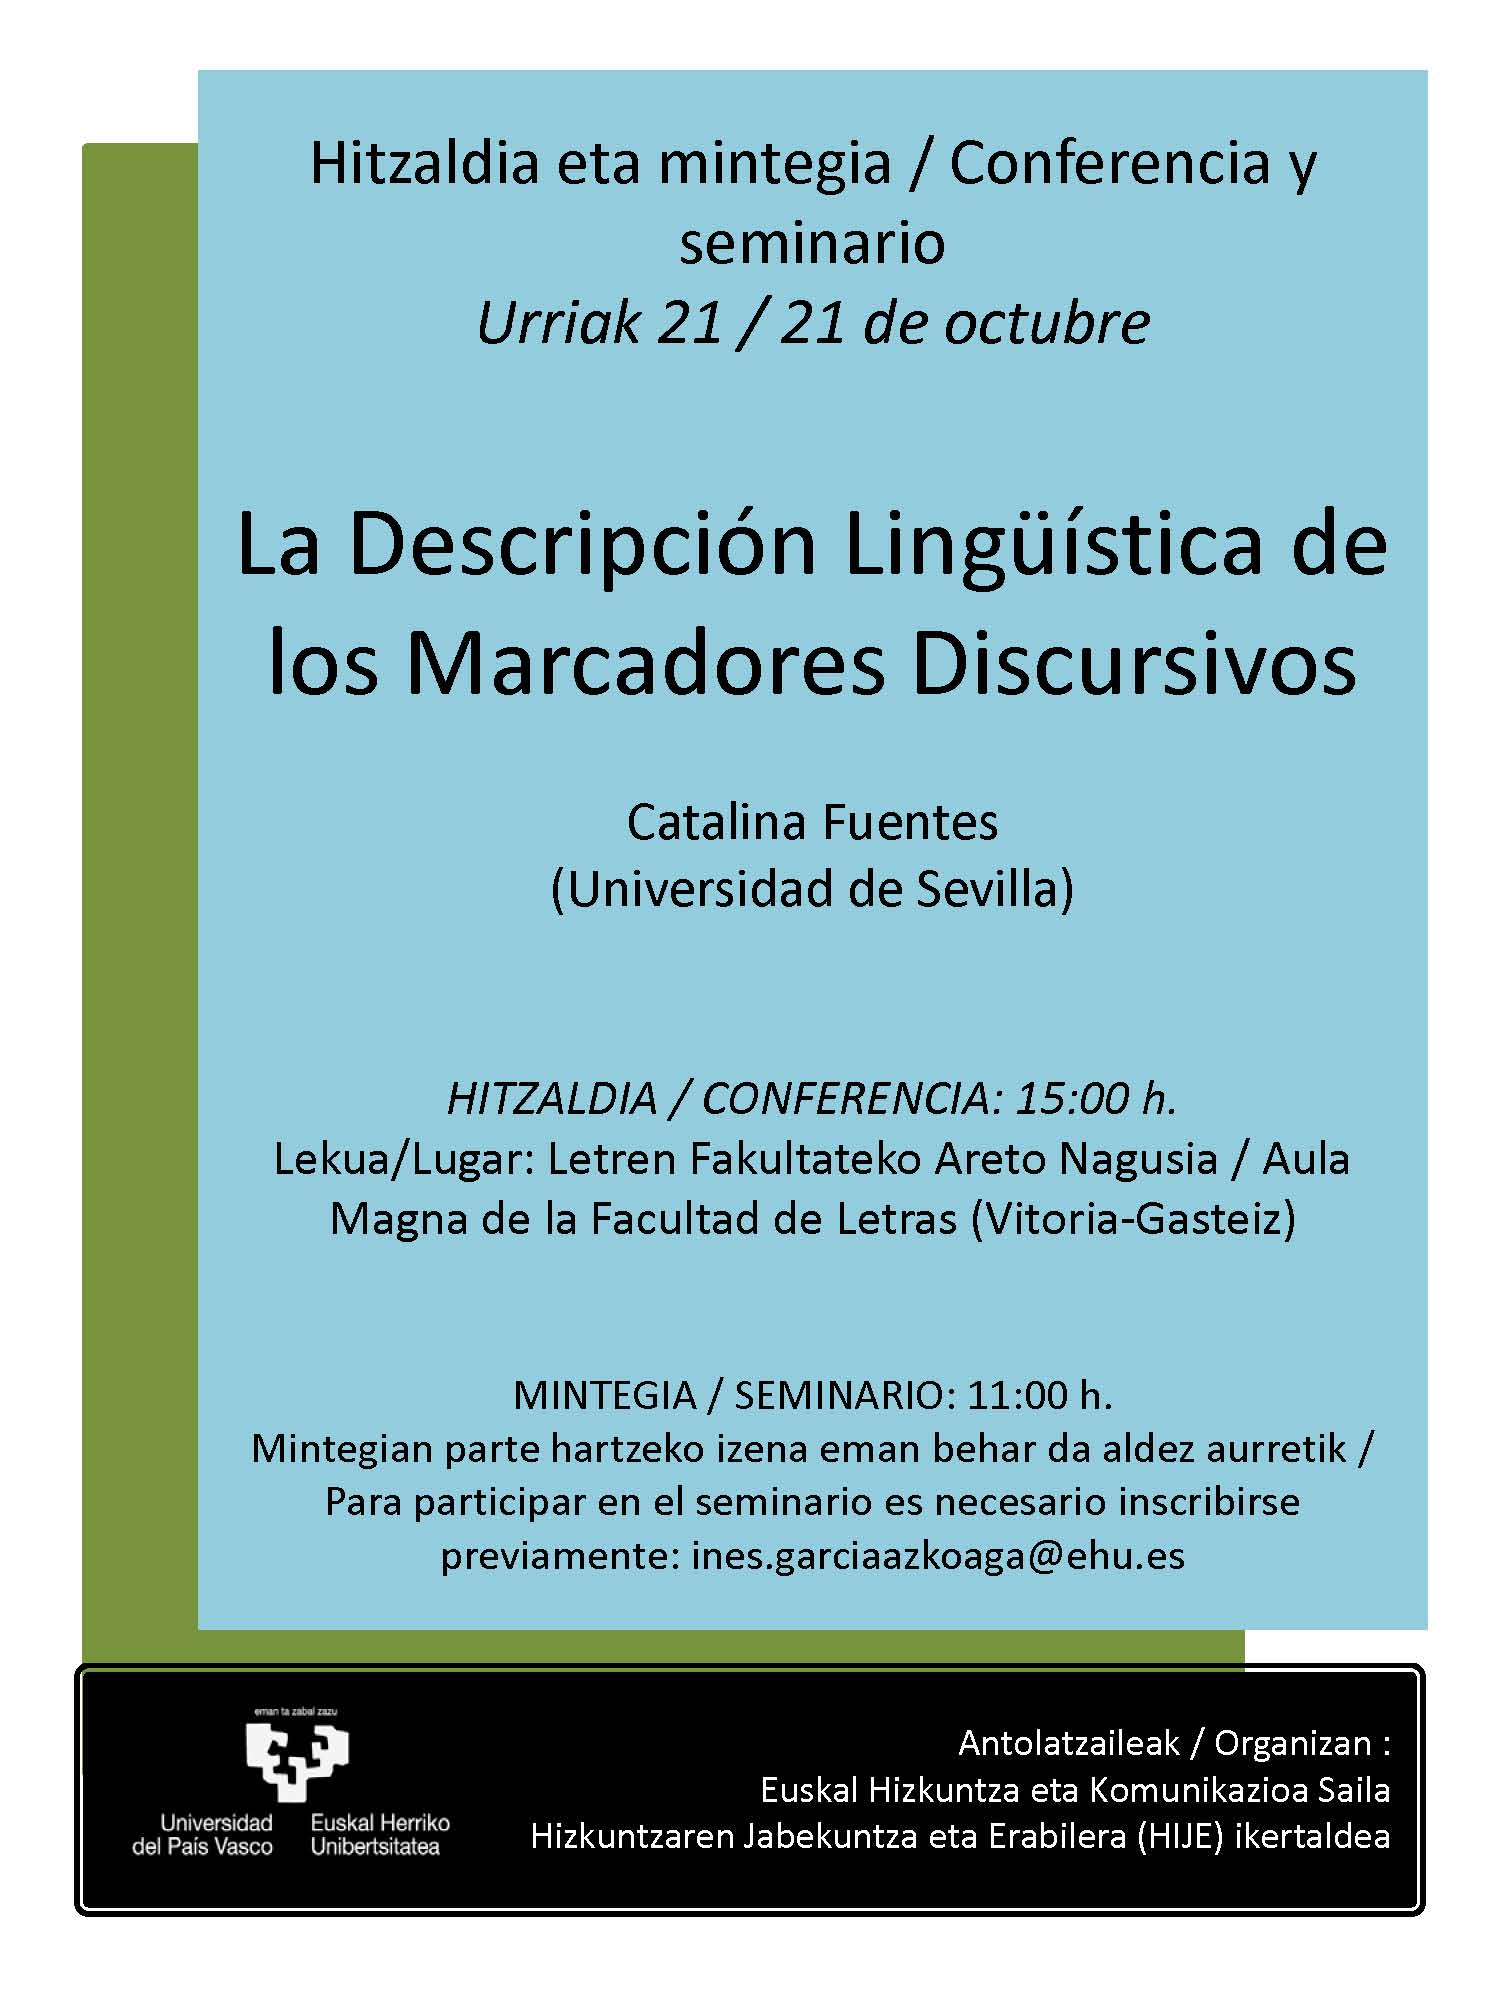 <p>La Descripción Lingüística de los Marcadores Discursivos</p>
